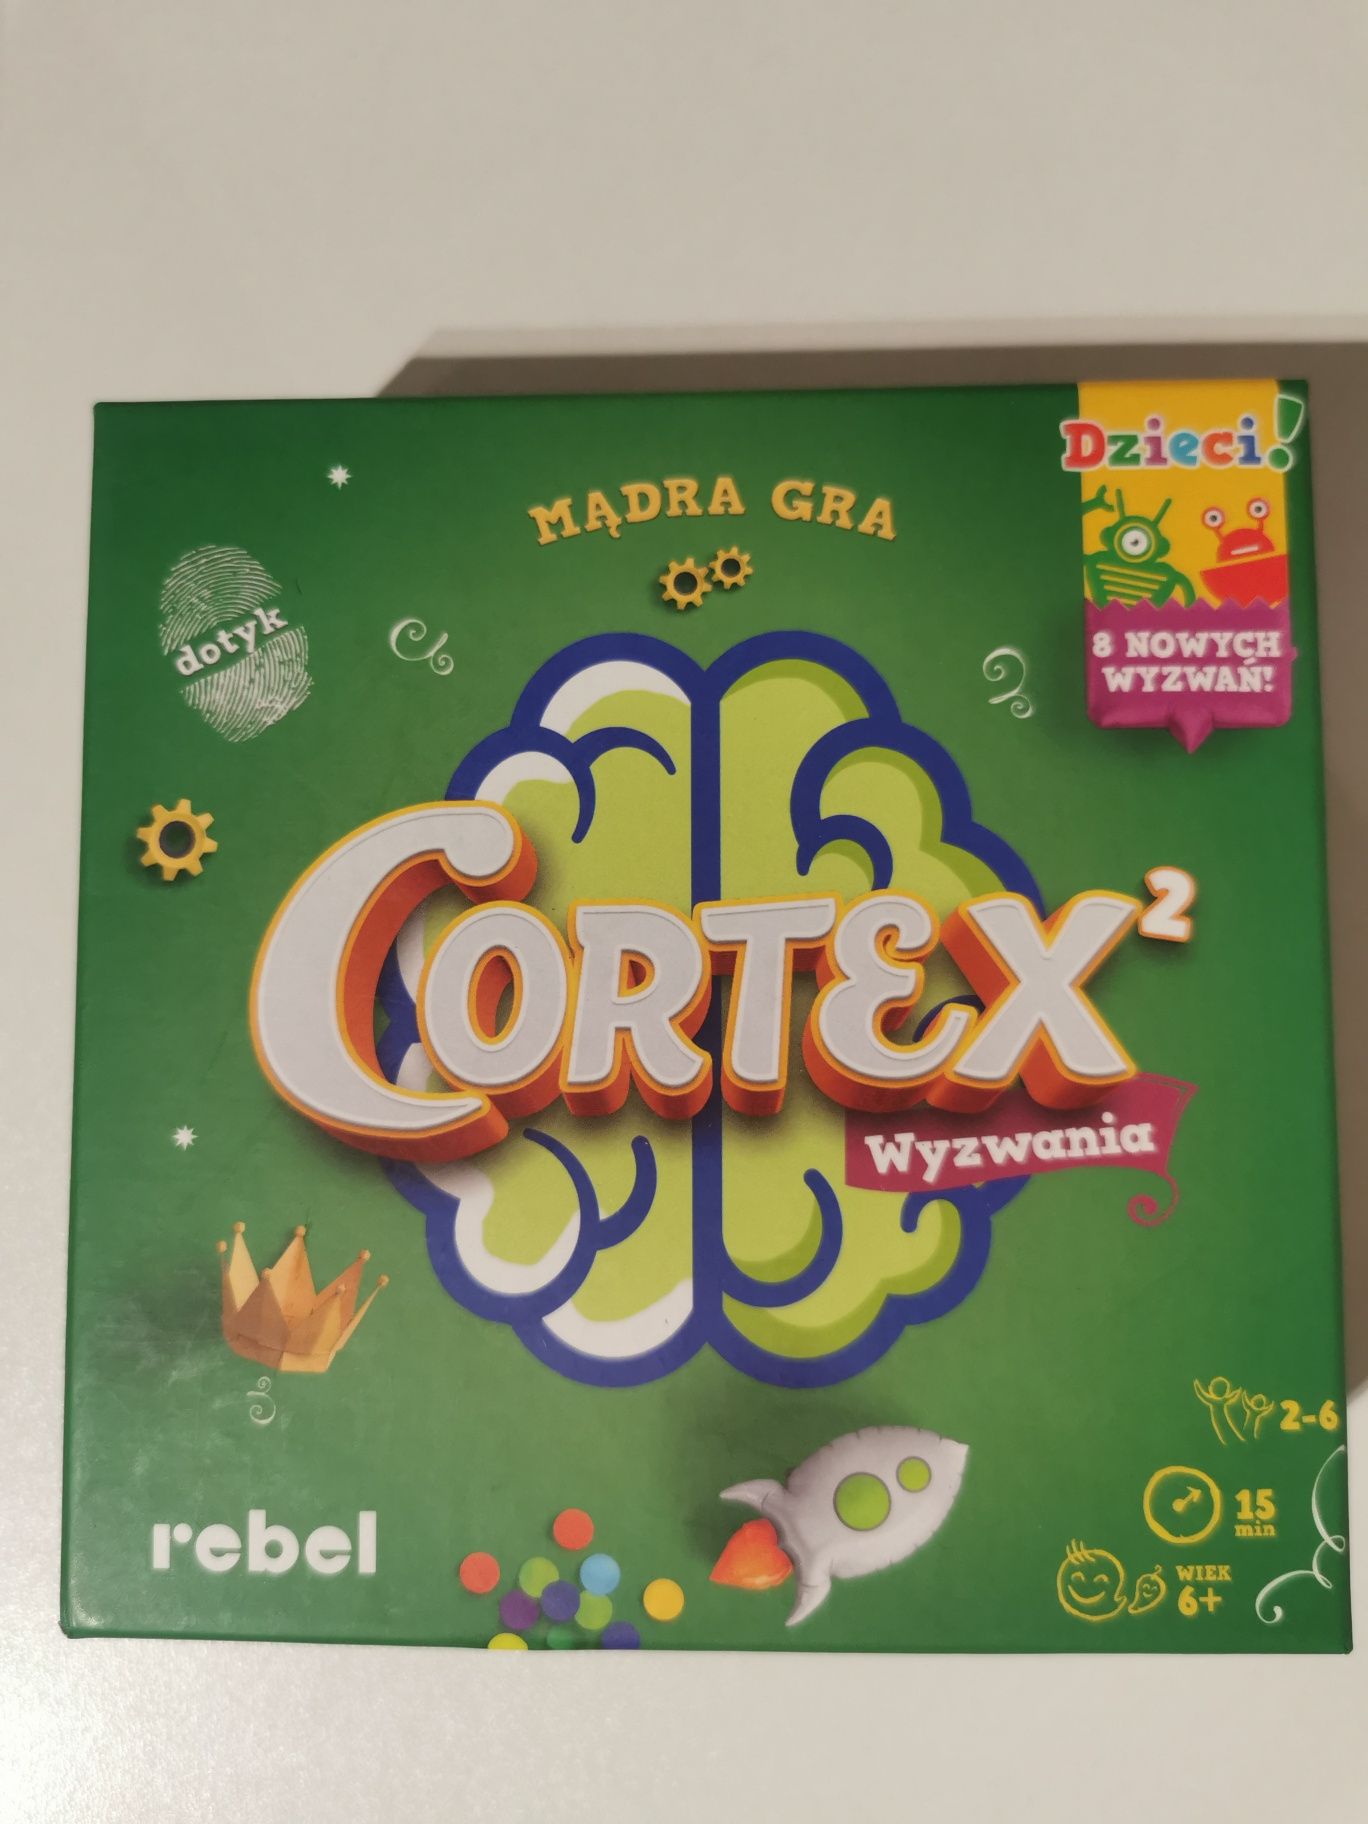 Cortex 2 wyzwania